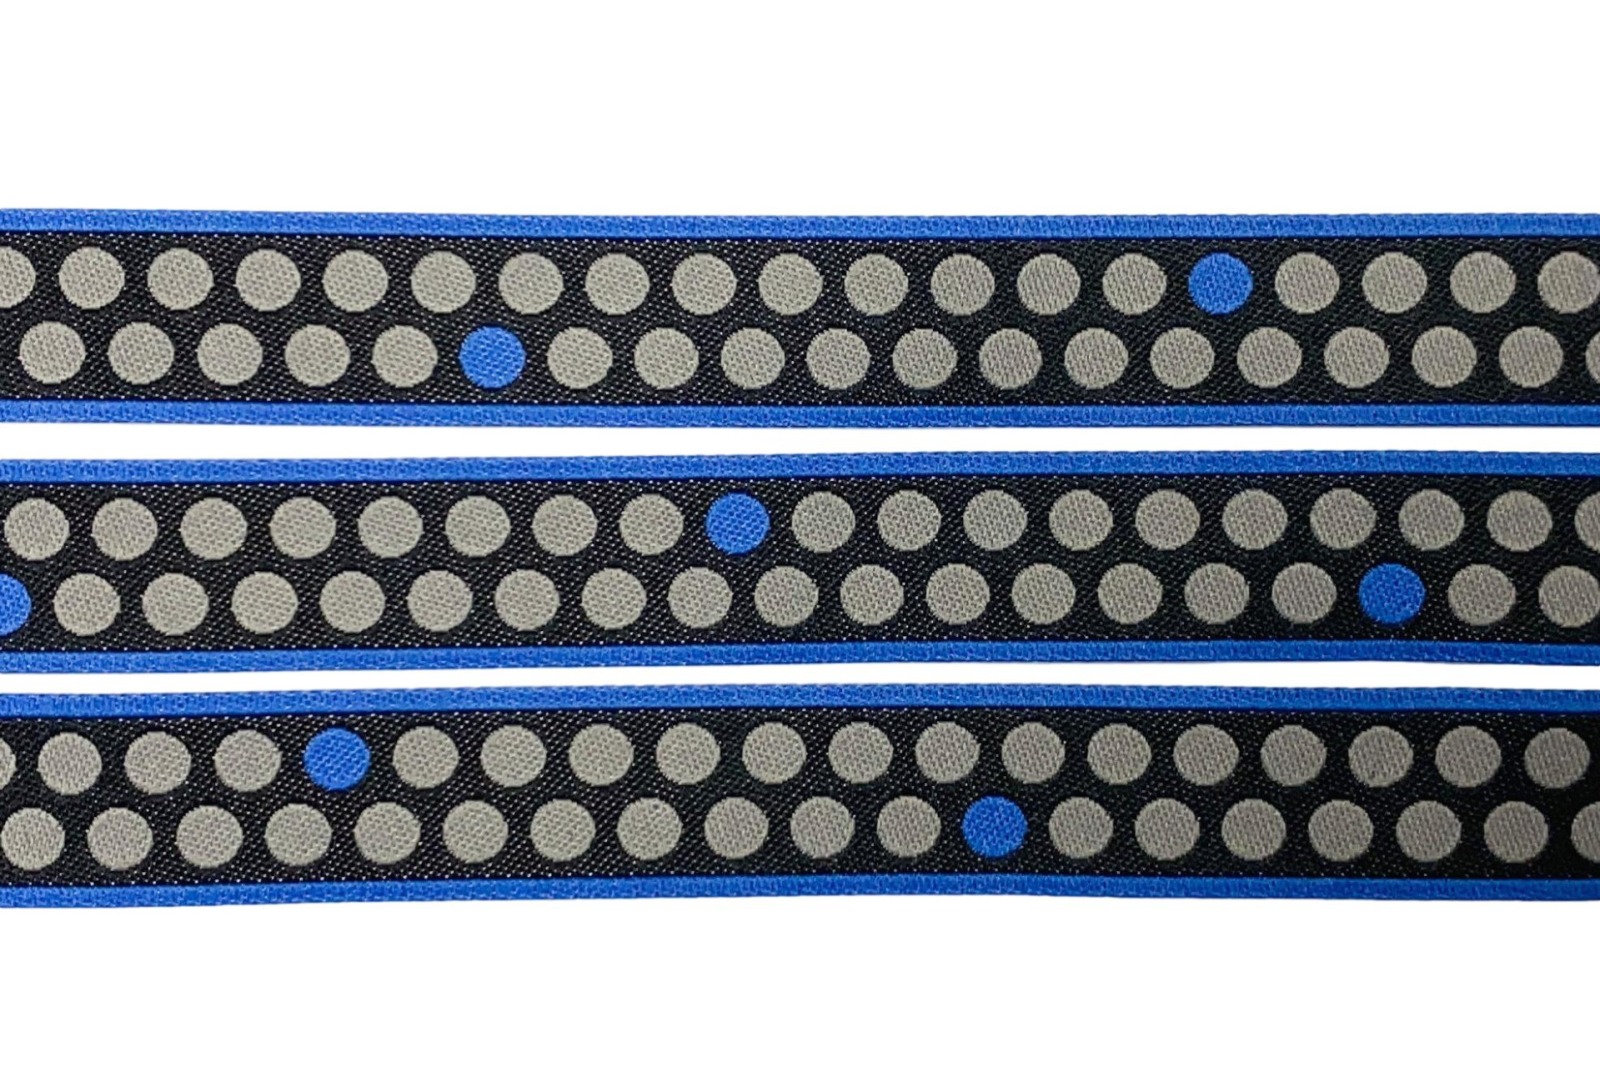 Webband Punkte - Eins, Zwei, Drei-Punkte - anthrazit - blaubeerstern - 15 mm 3